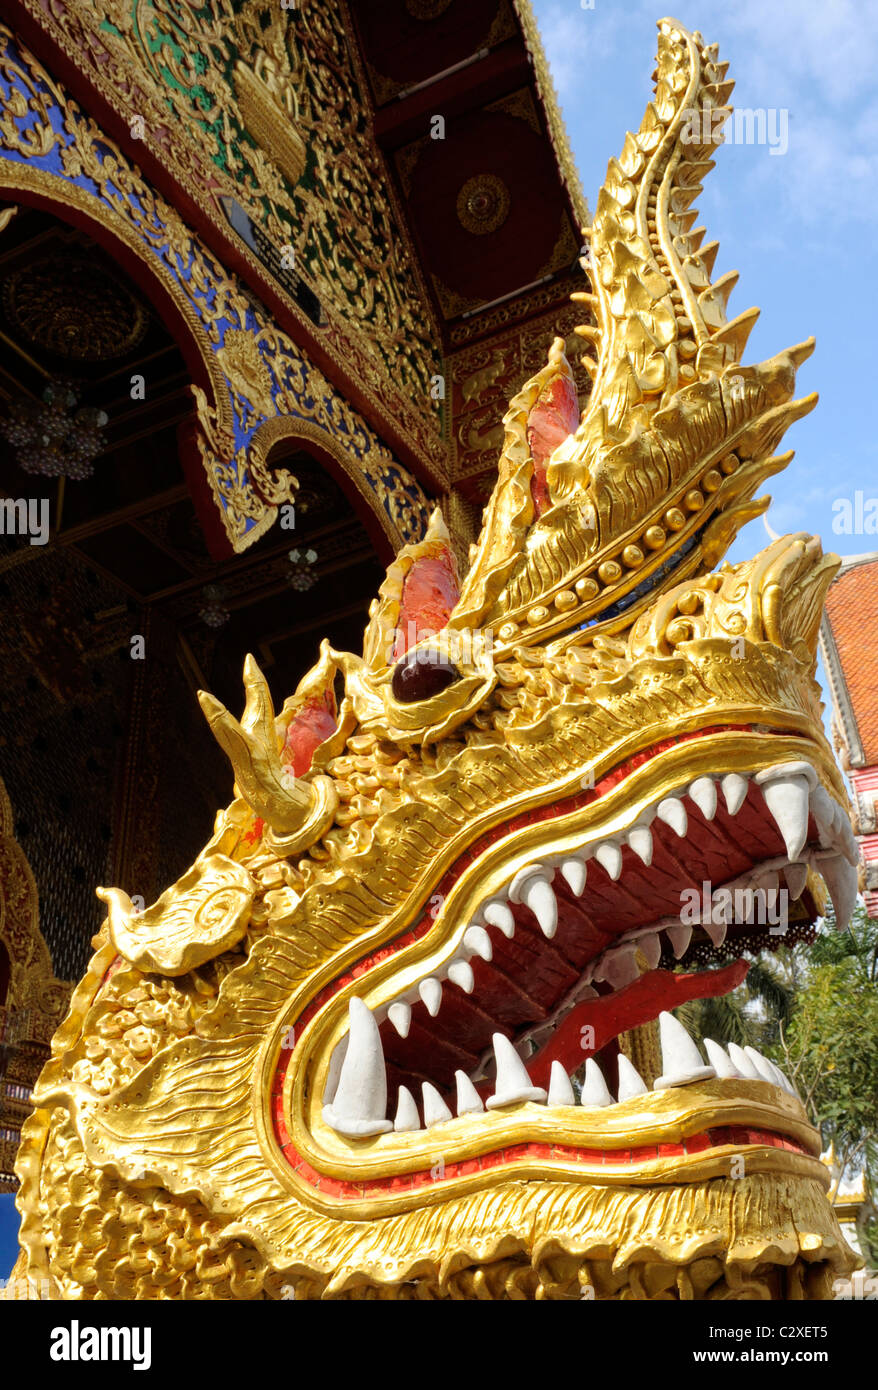 Statua di dorata testa di drago all'entrata principale del tempio Wat mani phraison o Wat Manee Pai,figlio, Mae Sot, Thailandia Foto Stock